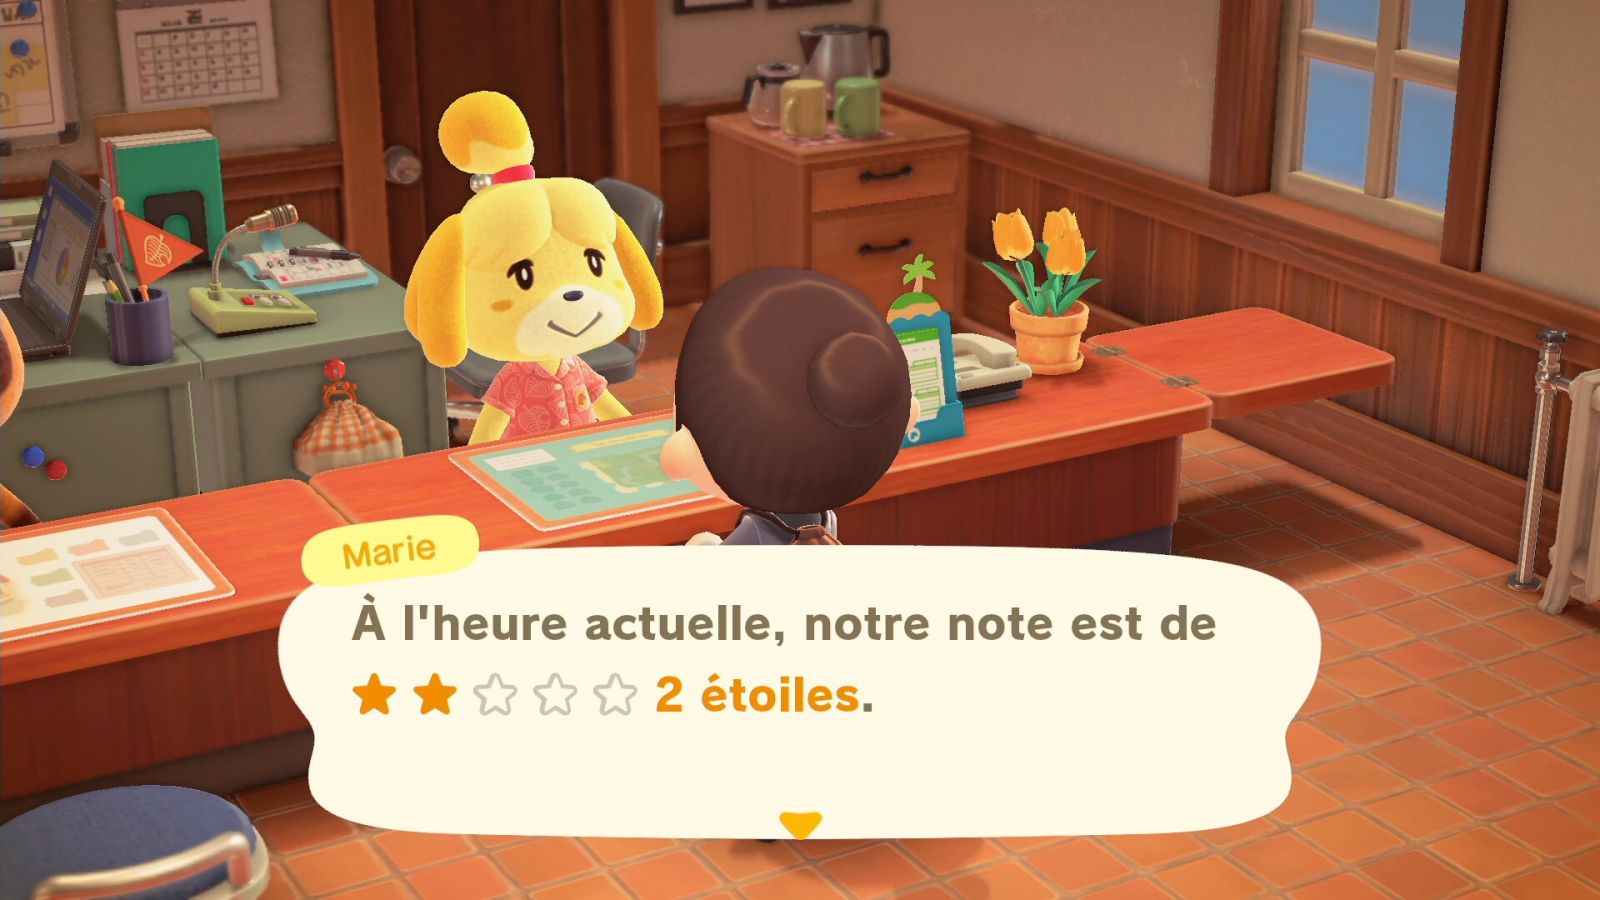 Marie donne le nombre d'étoiles de l'île au Bureau des résidents, dans Animal Crossing: New Horizons.